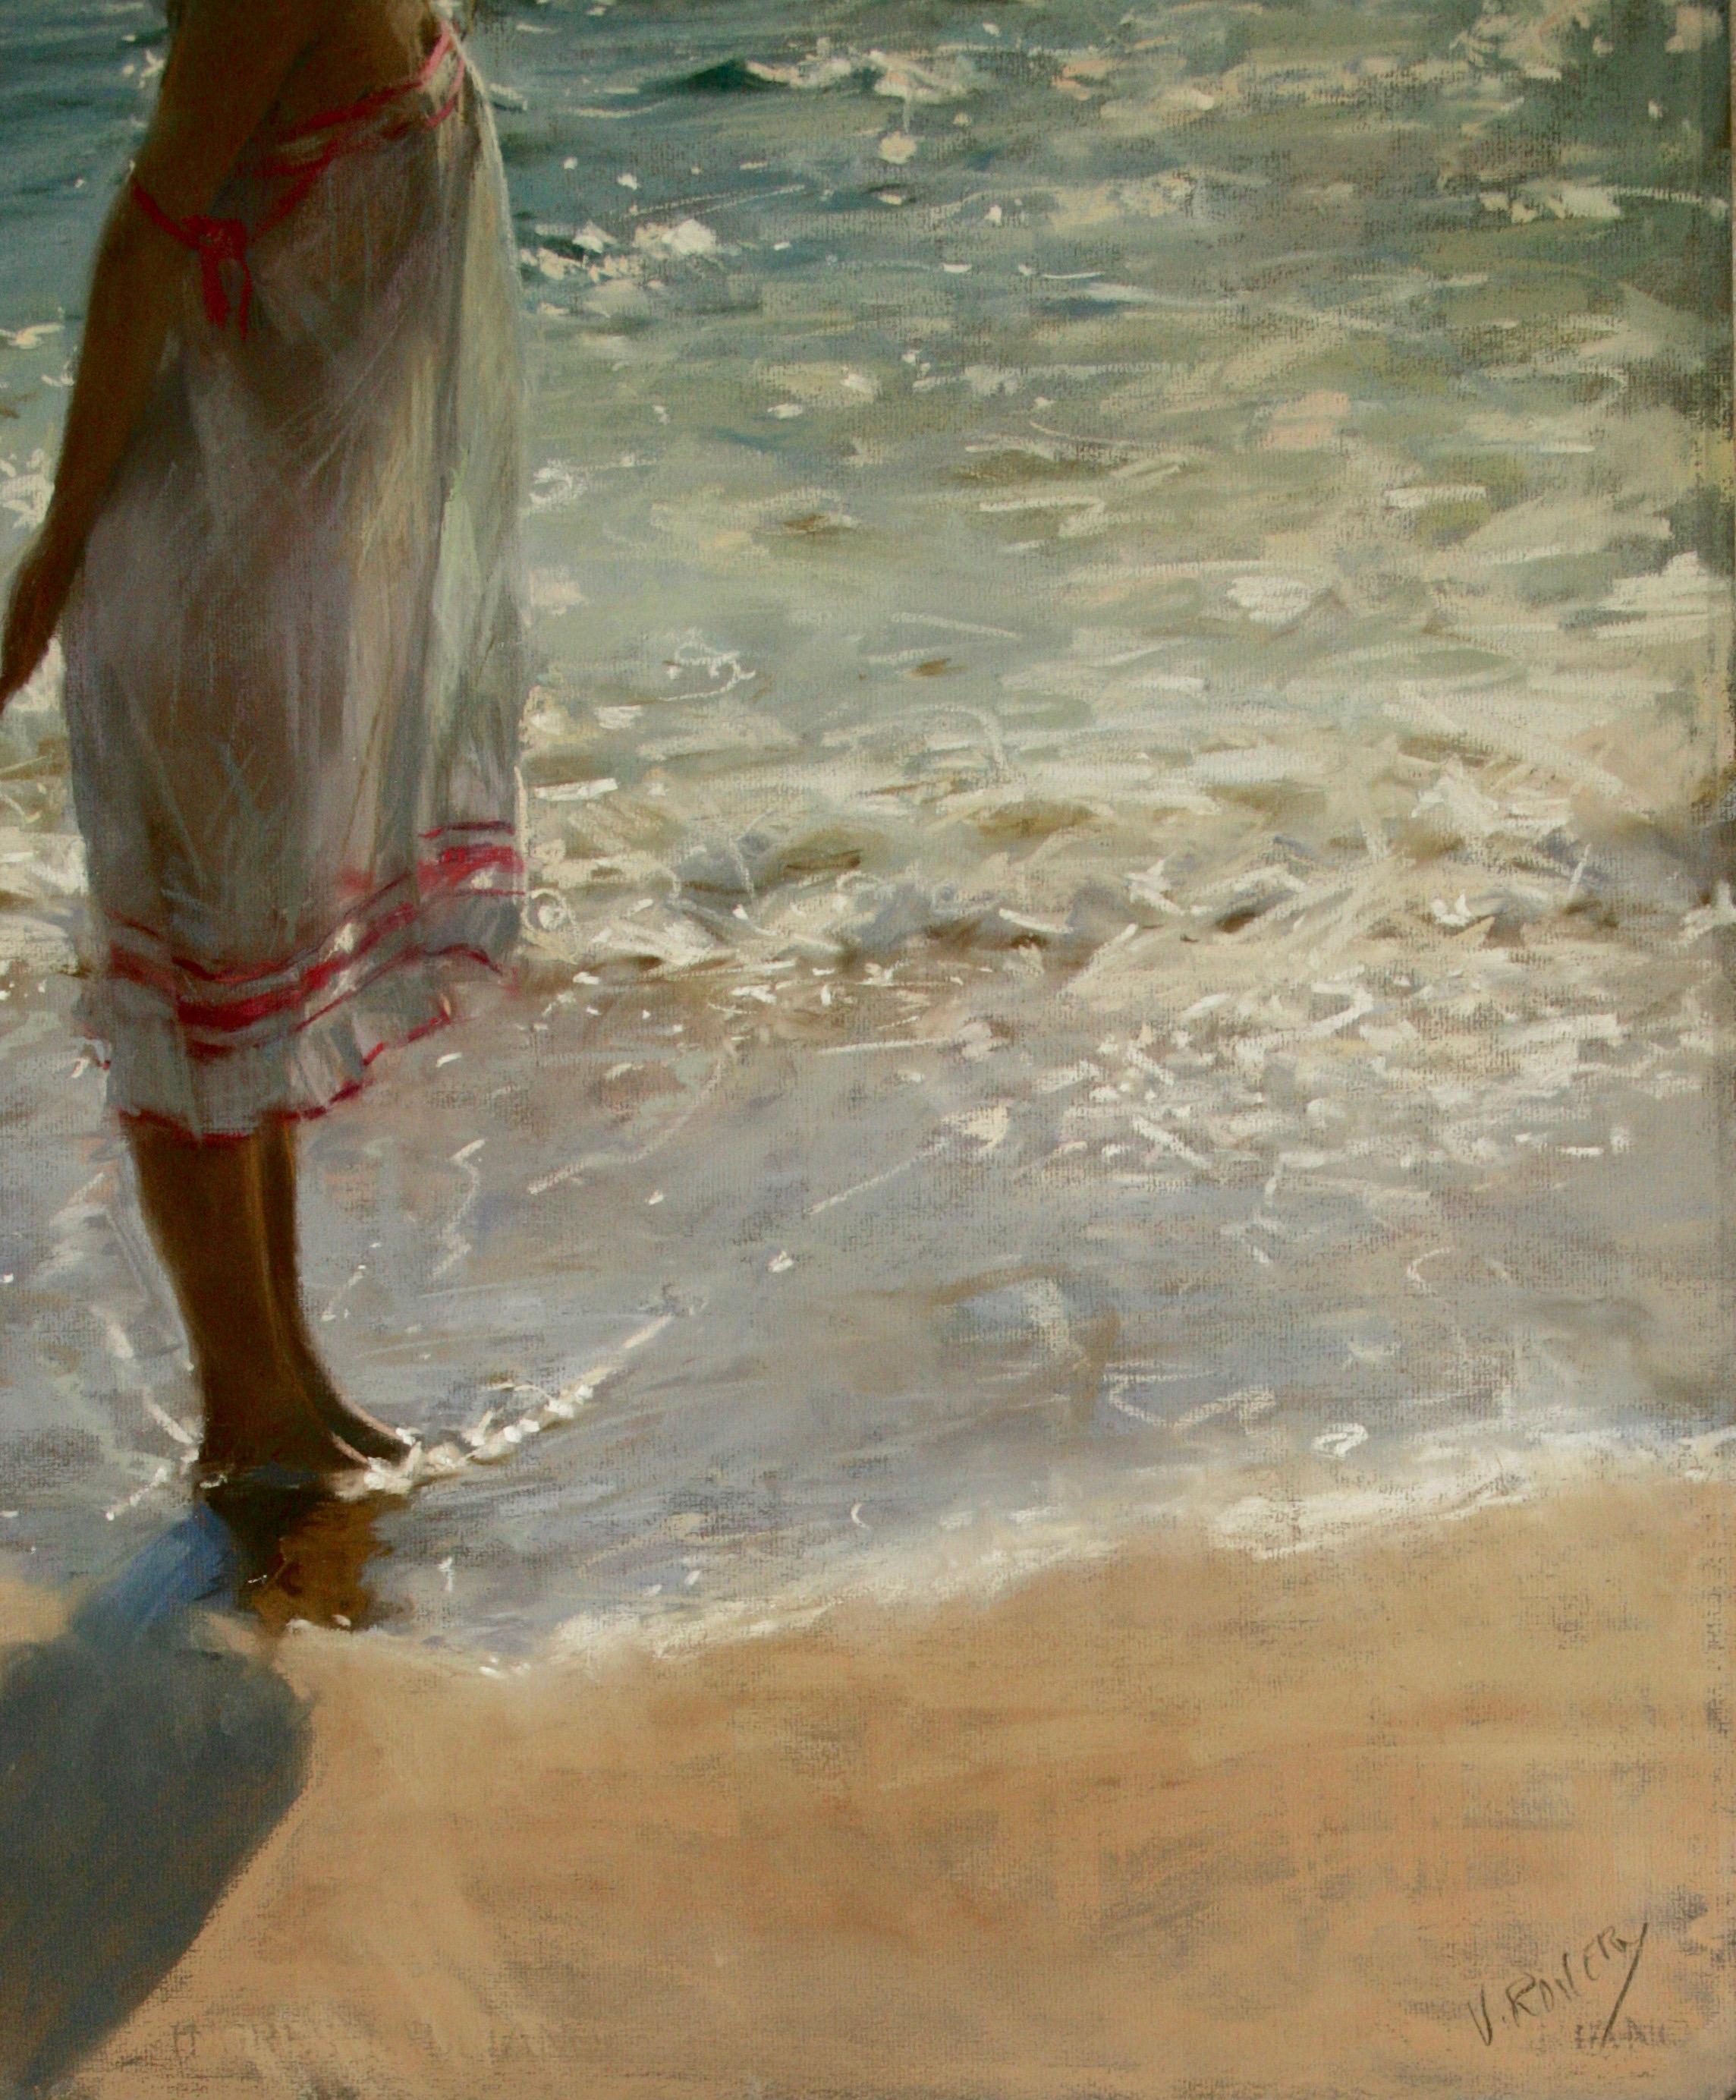 BY THE EDGE OF THE SEA...Vincente Romero Redondo , contemporary Spanish artist. 2